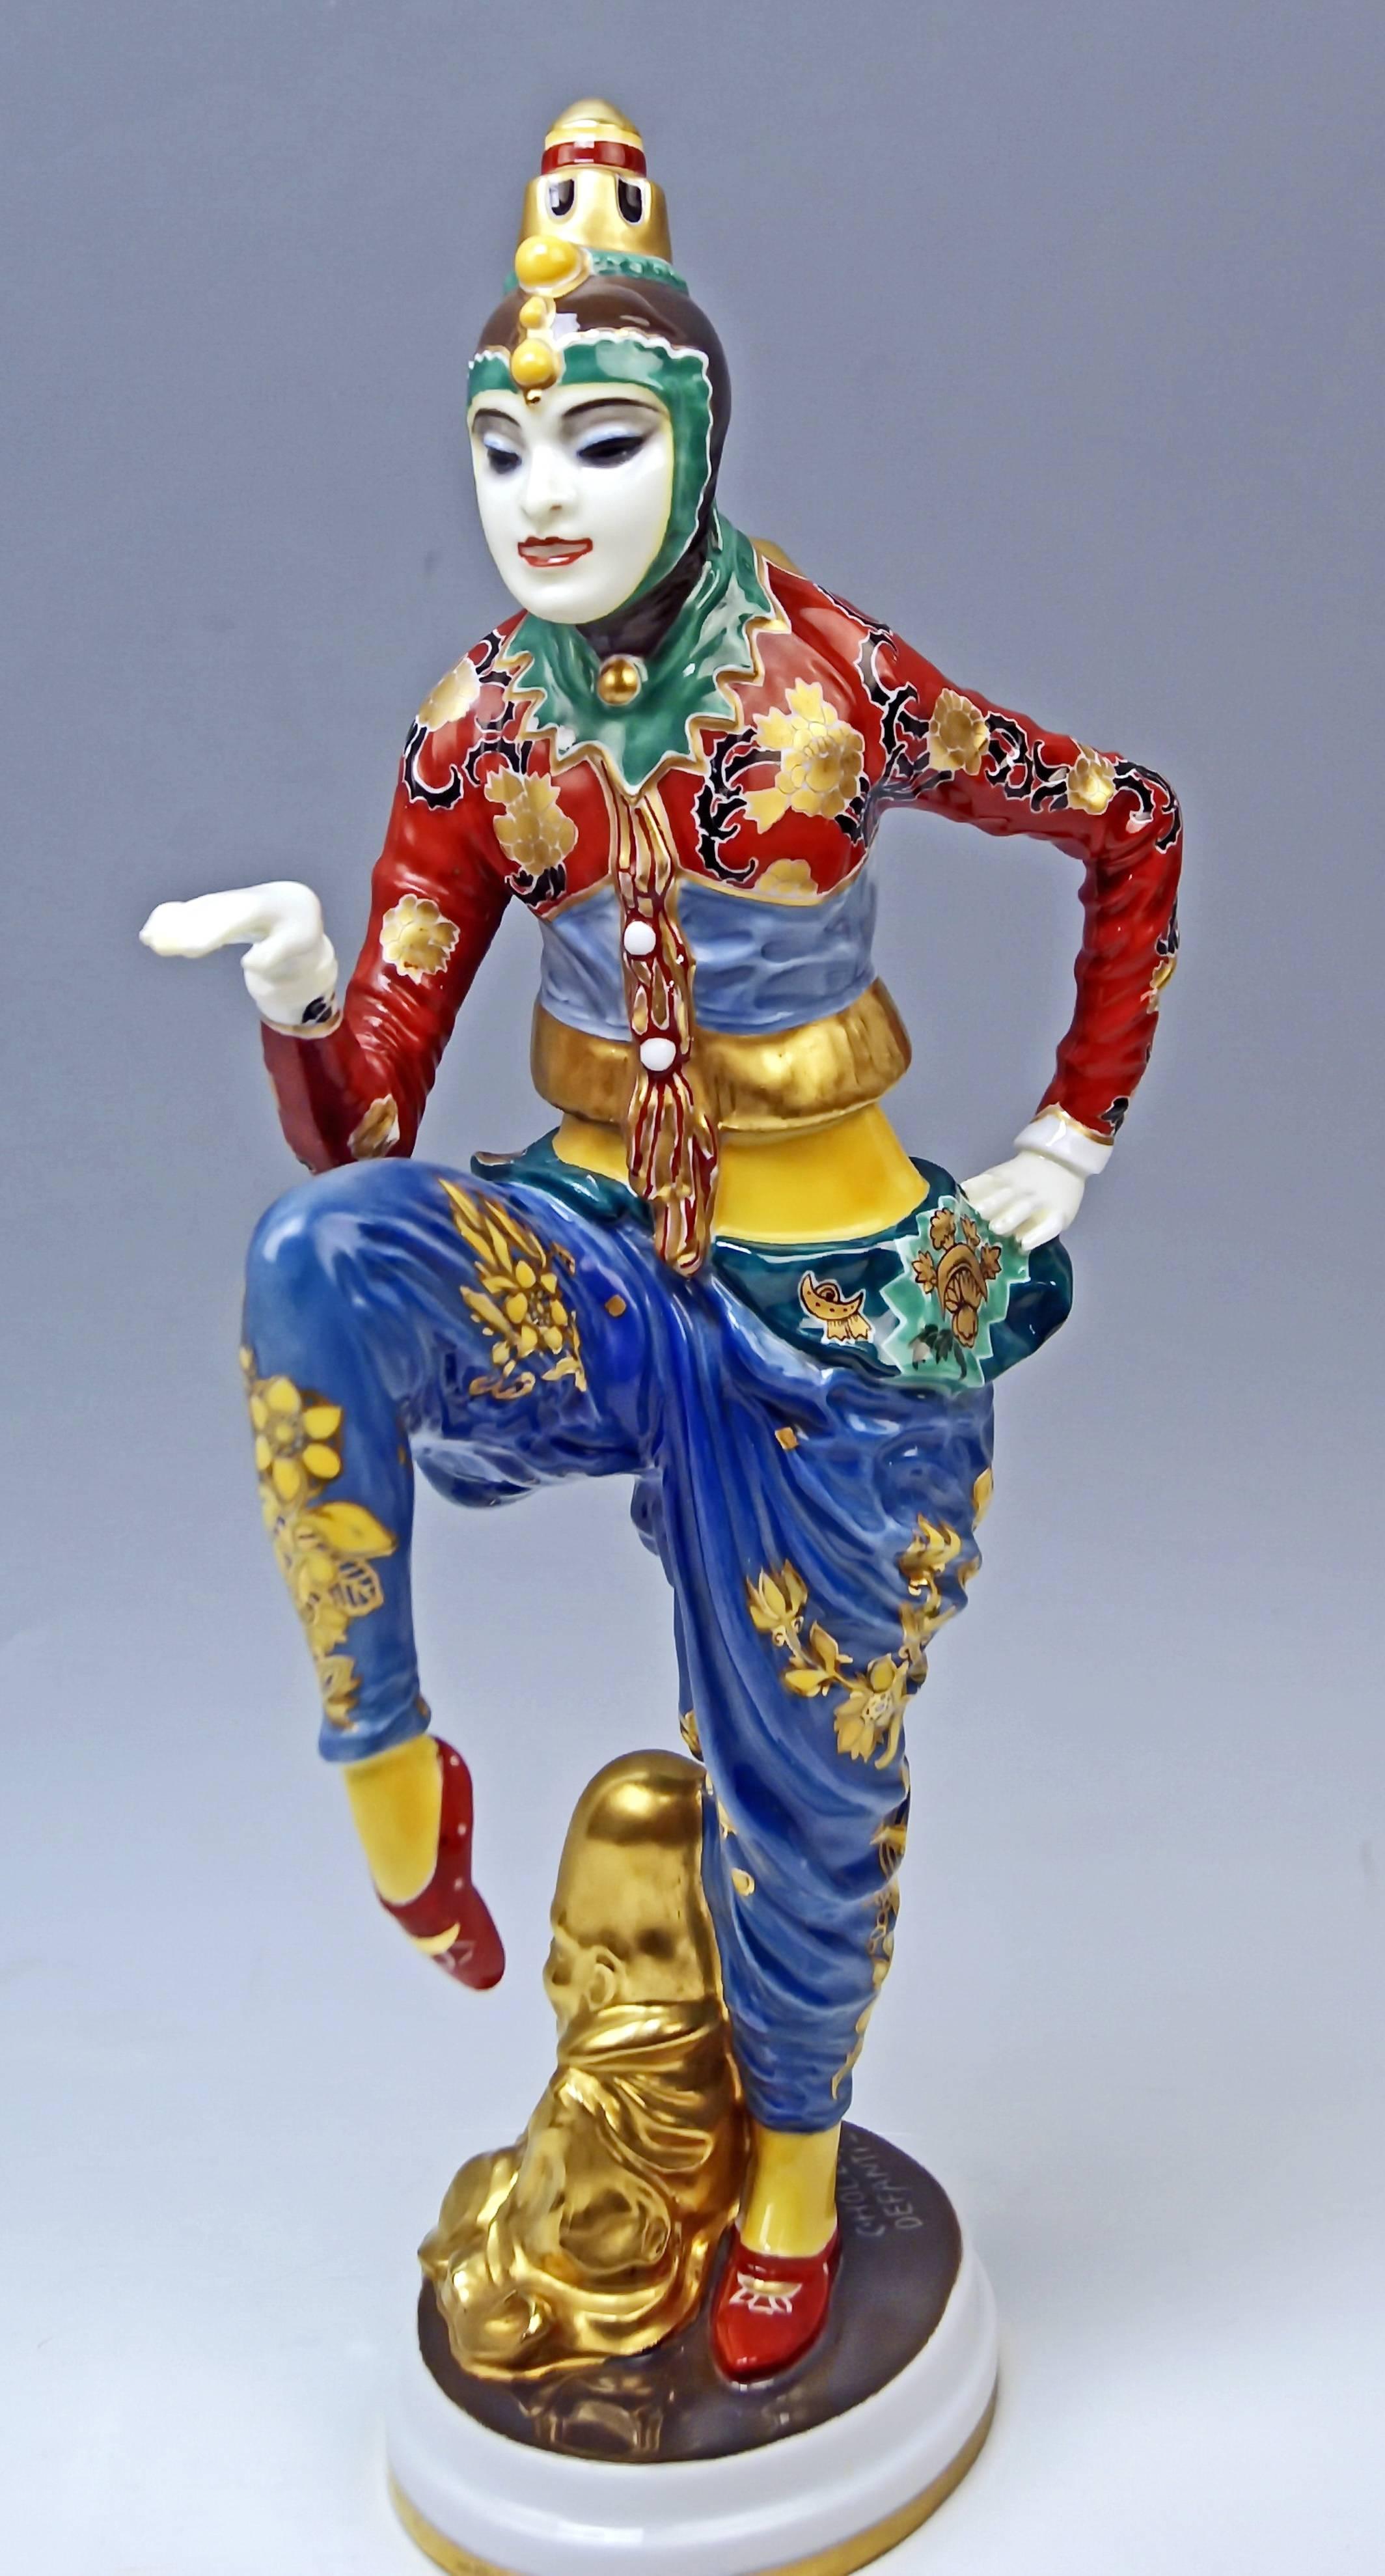 Porcelain Rosenthal Korean Lady Dancer Constantin Holzer-Defanti Germany made 1929